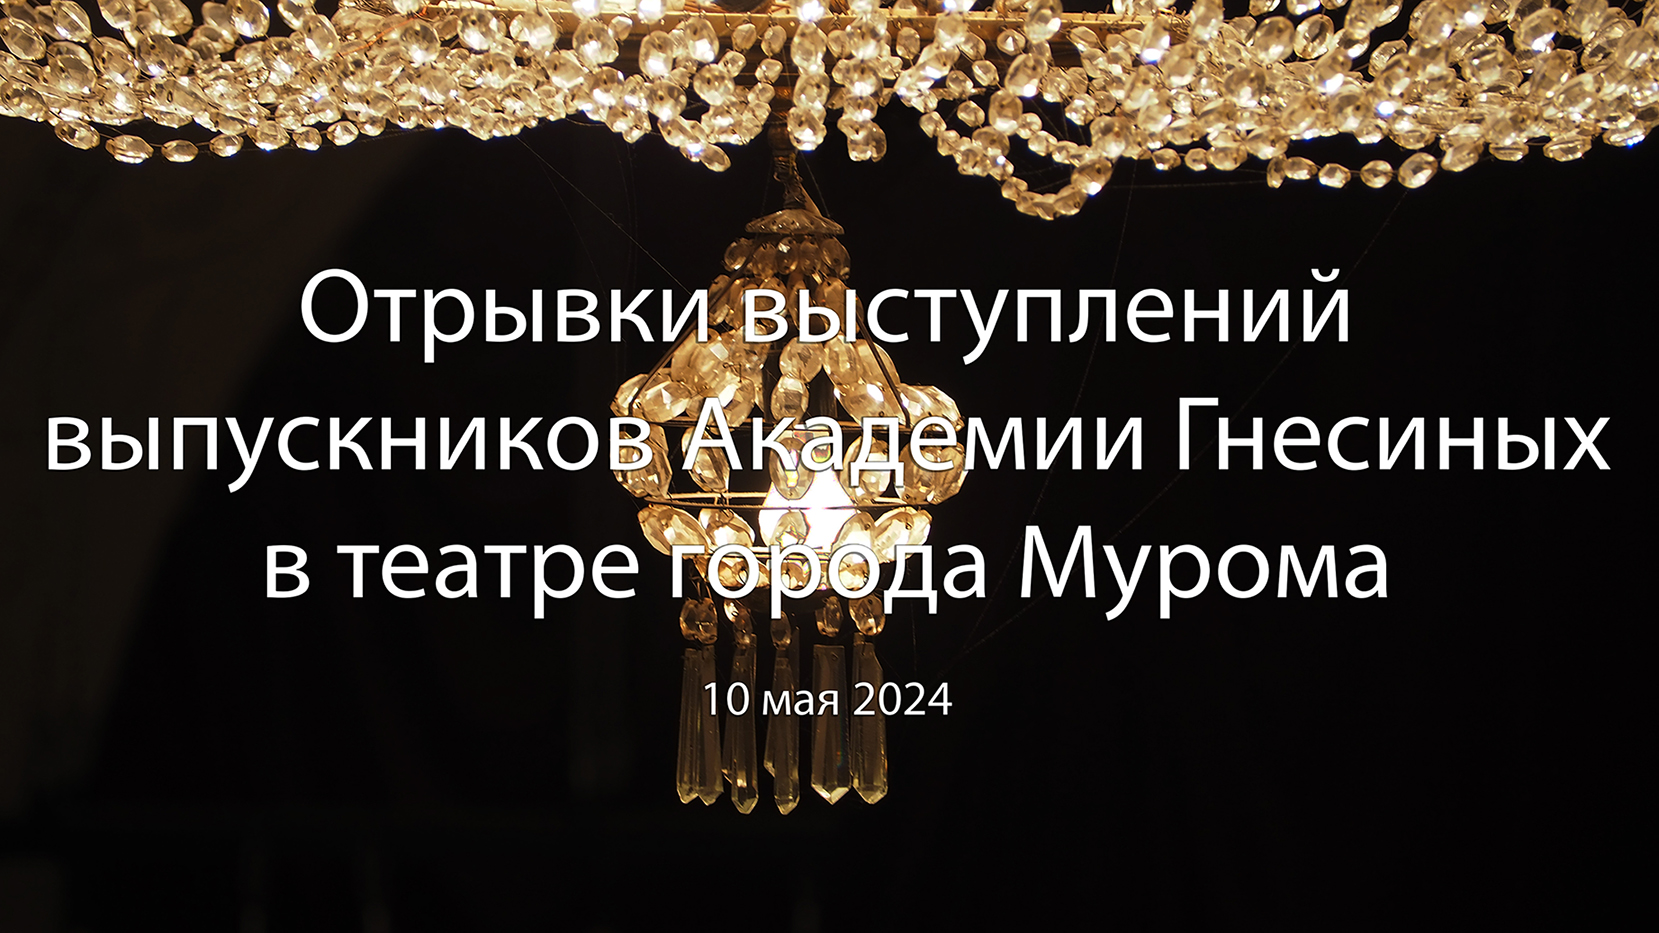 Концерт "Музыкальное путешествие из глубины веков - в будущее", Муромский театр, 10 мая 2024